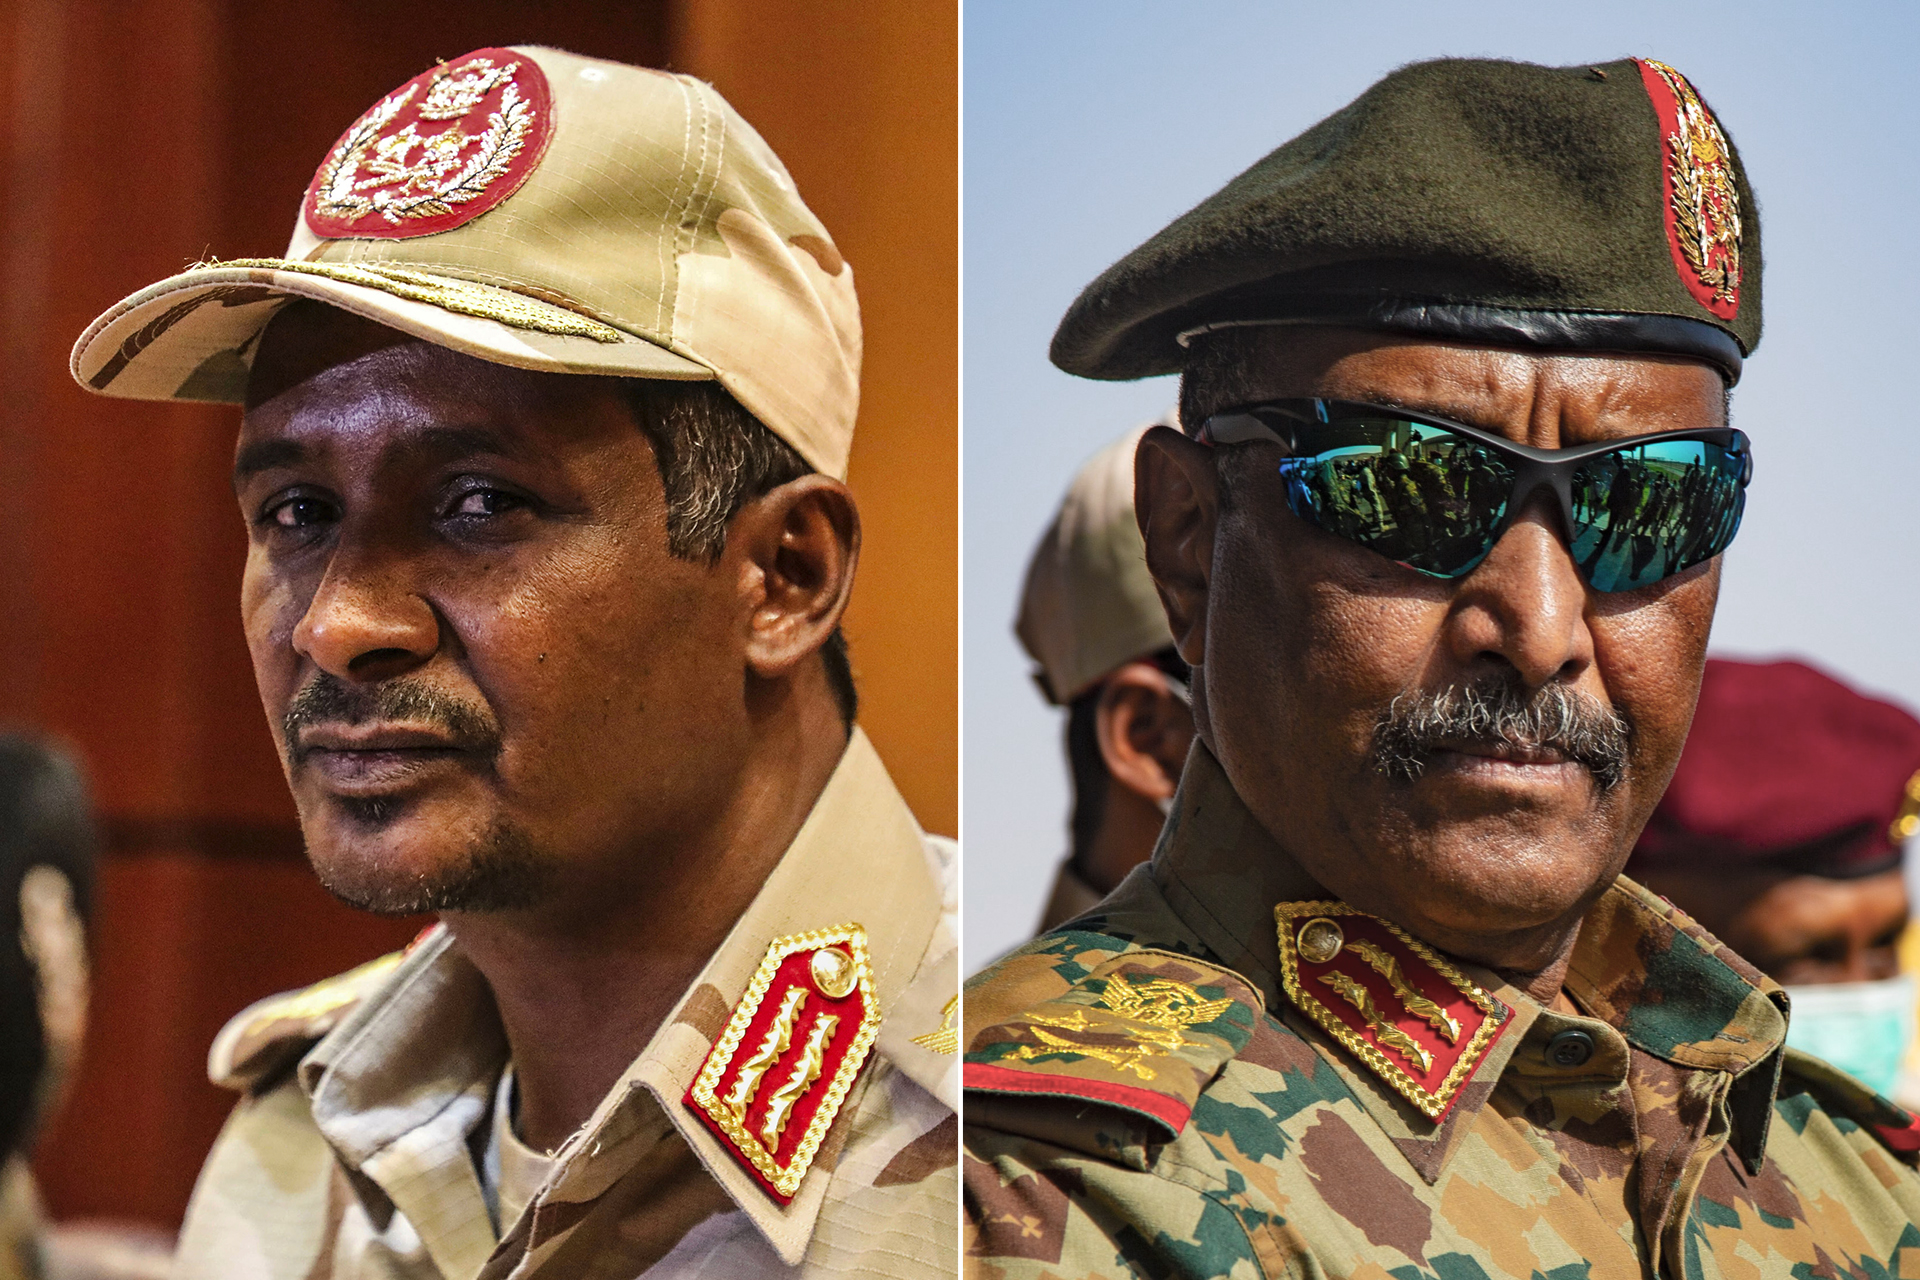 تجدد التوتر بين السودان و”إيغاد”.. هل يسود منطق الحرب؟ | سياسة – البوكس نيوز